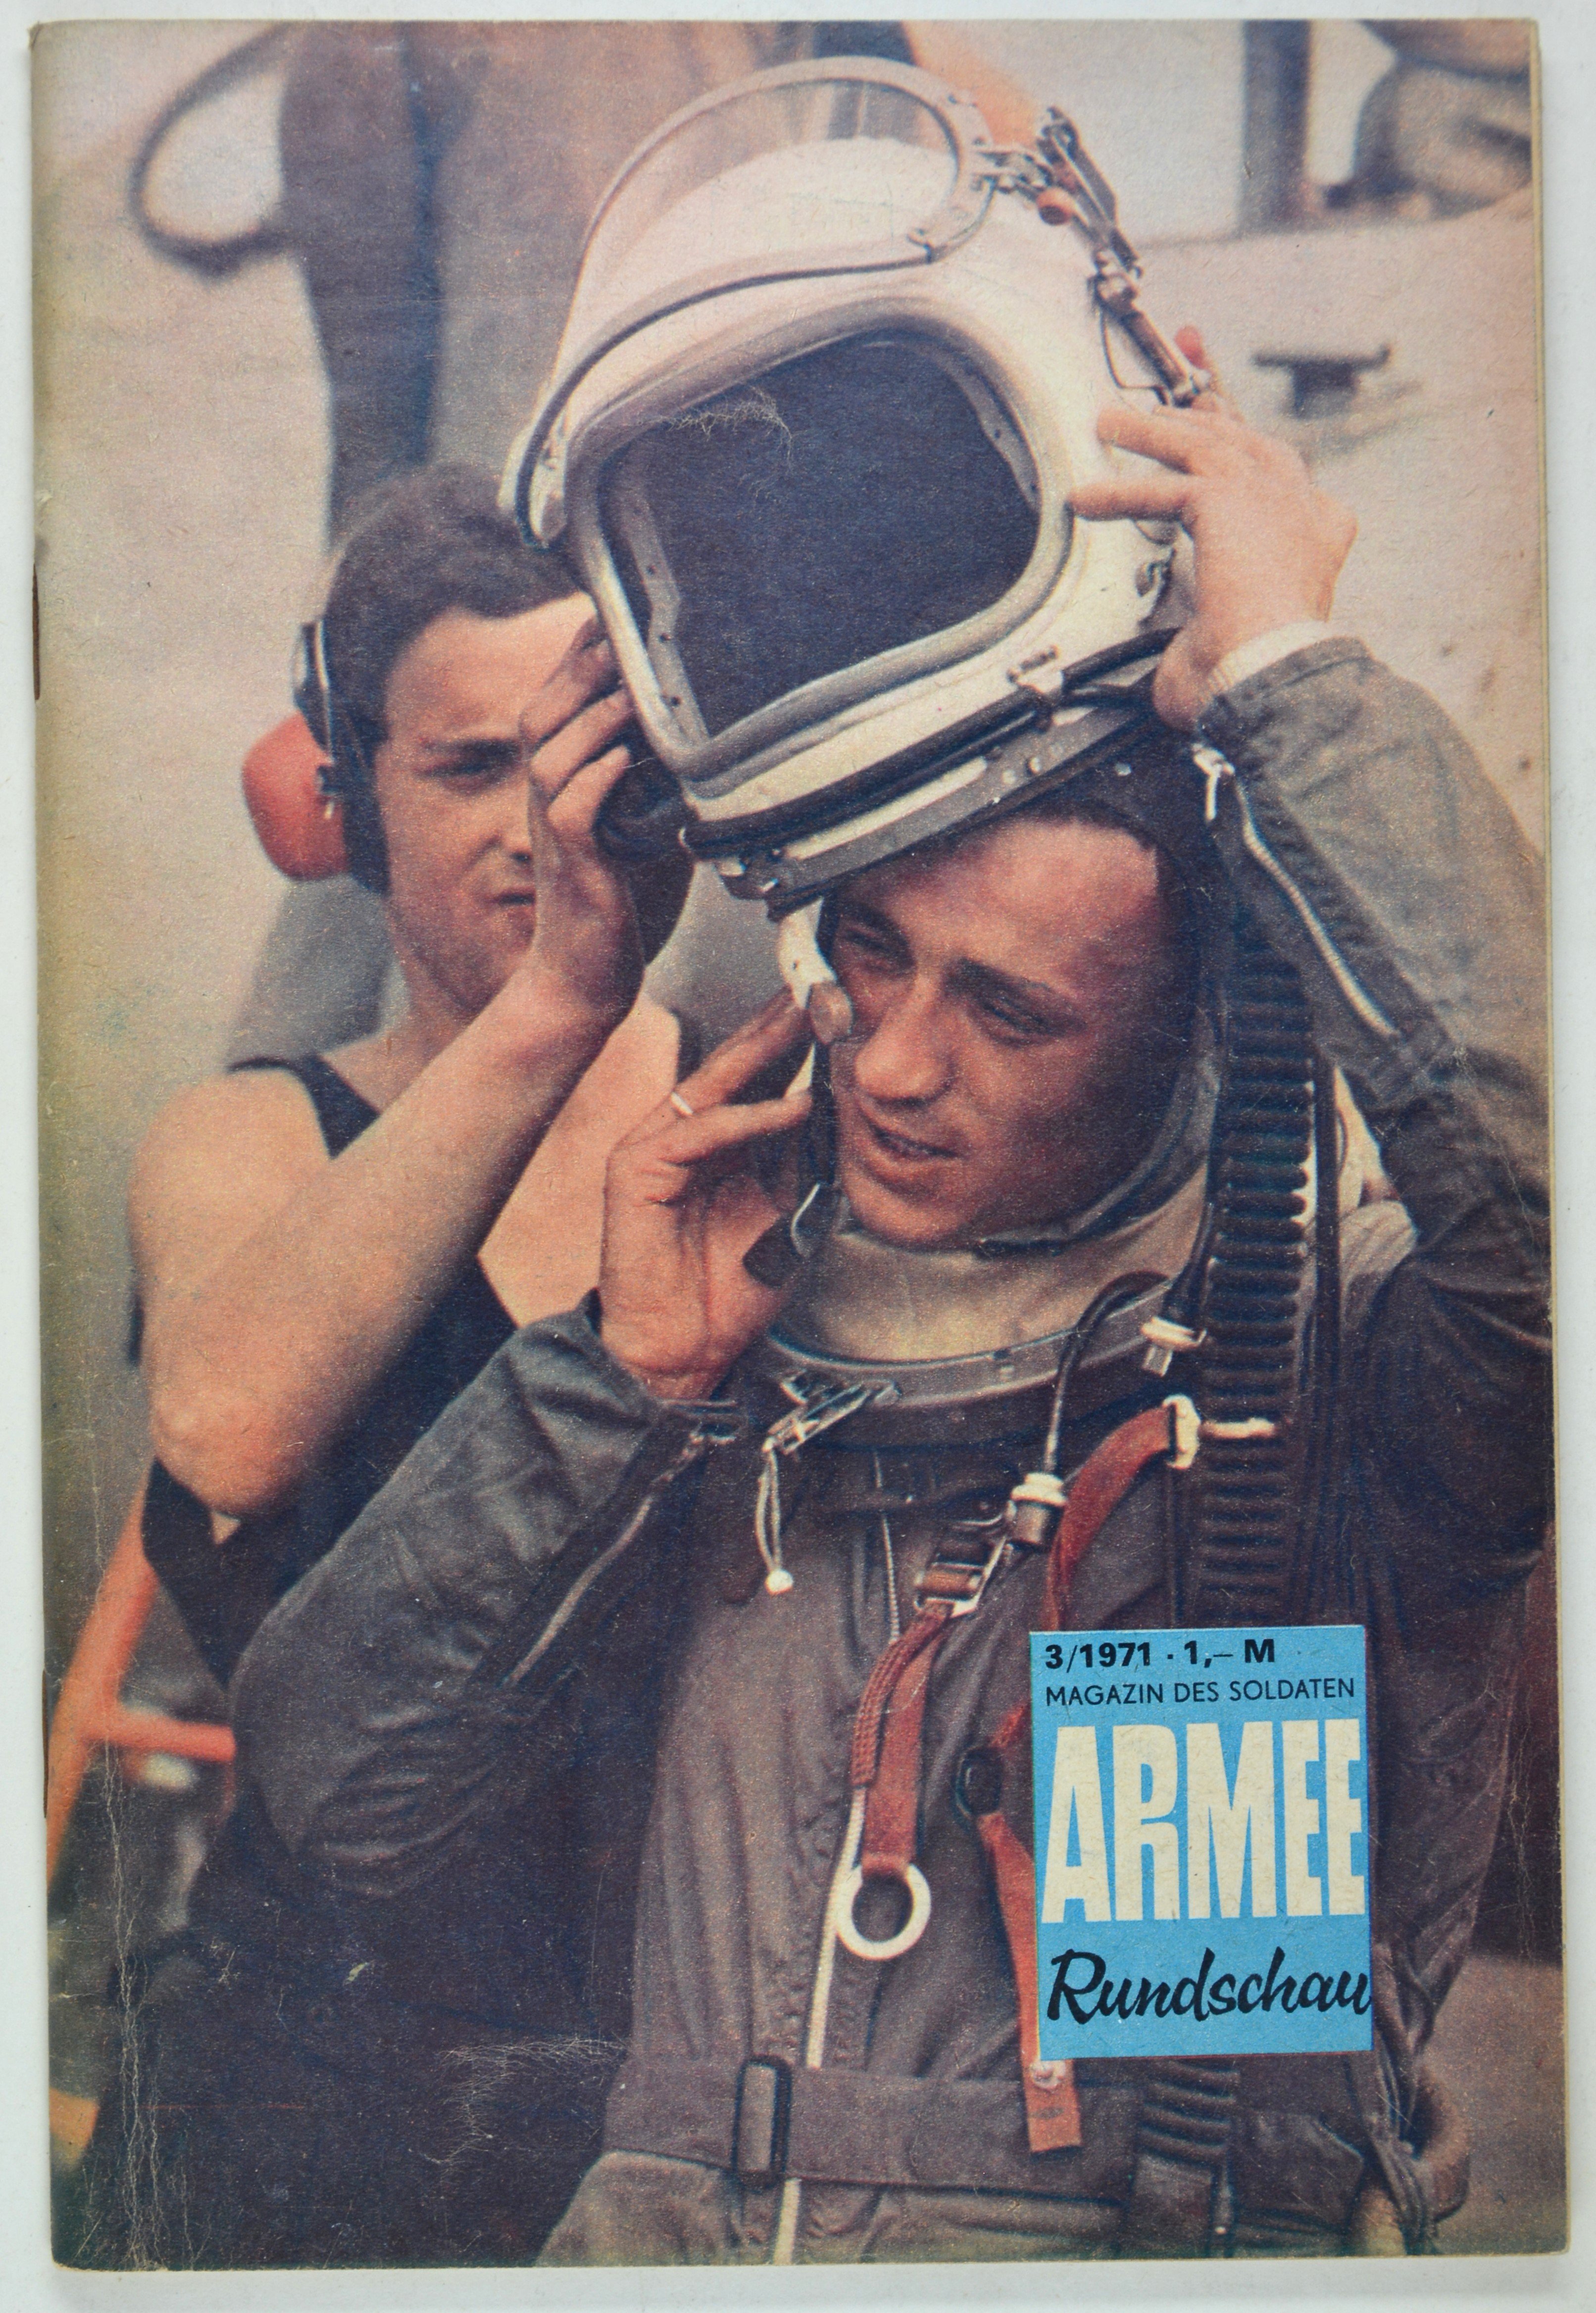 Armeerundschau - Magazin des Soldaten (1971), Heft 3 (DDR Geschichtsmuseum im Dokumentationszentrum Perleberg CC BY-SA)